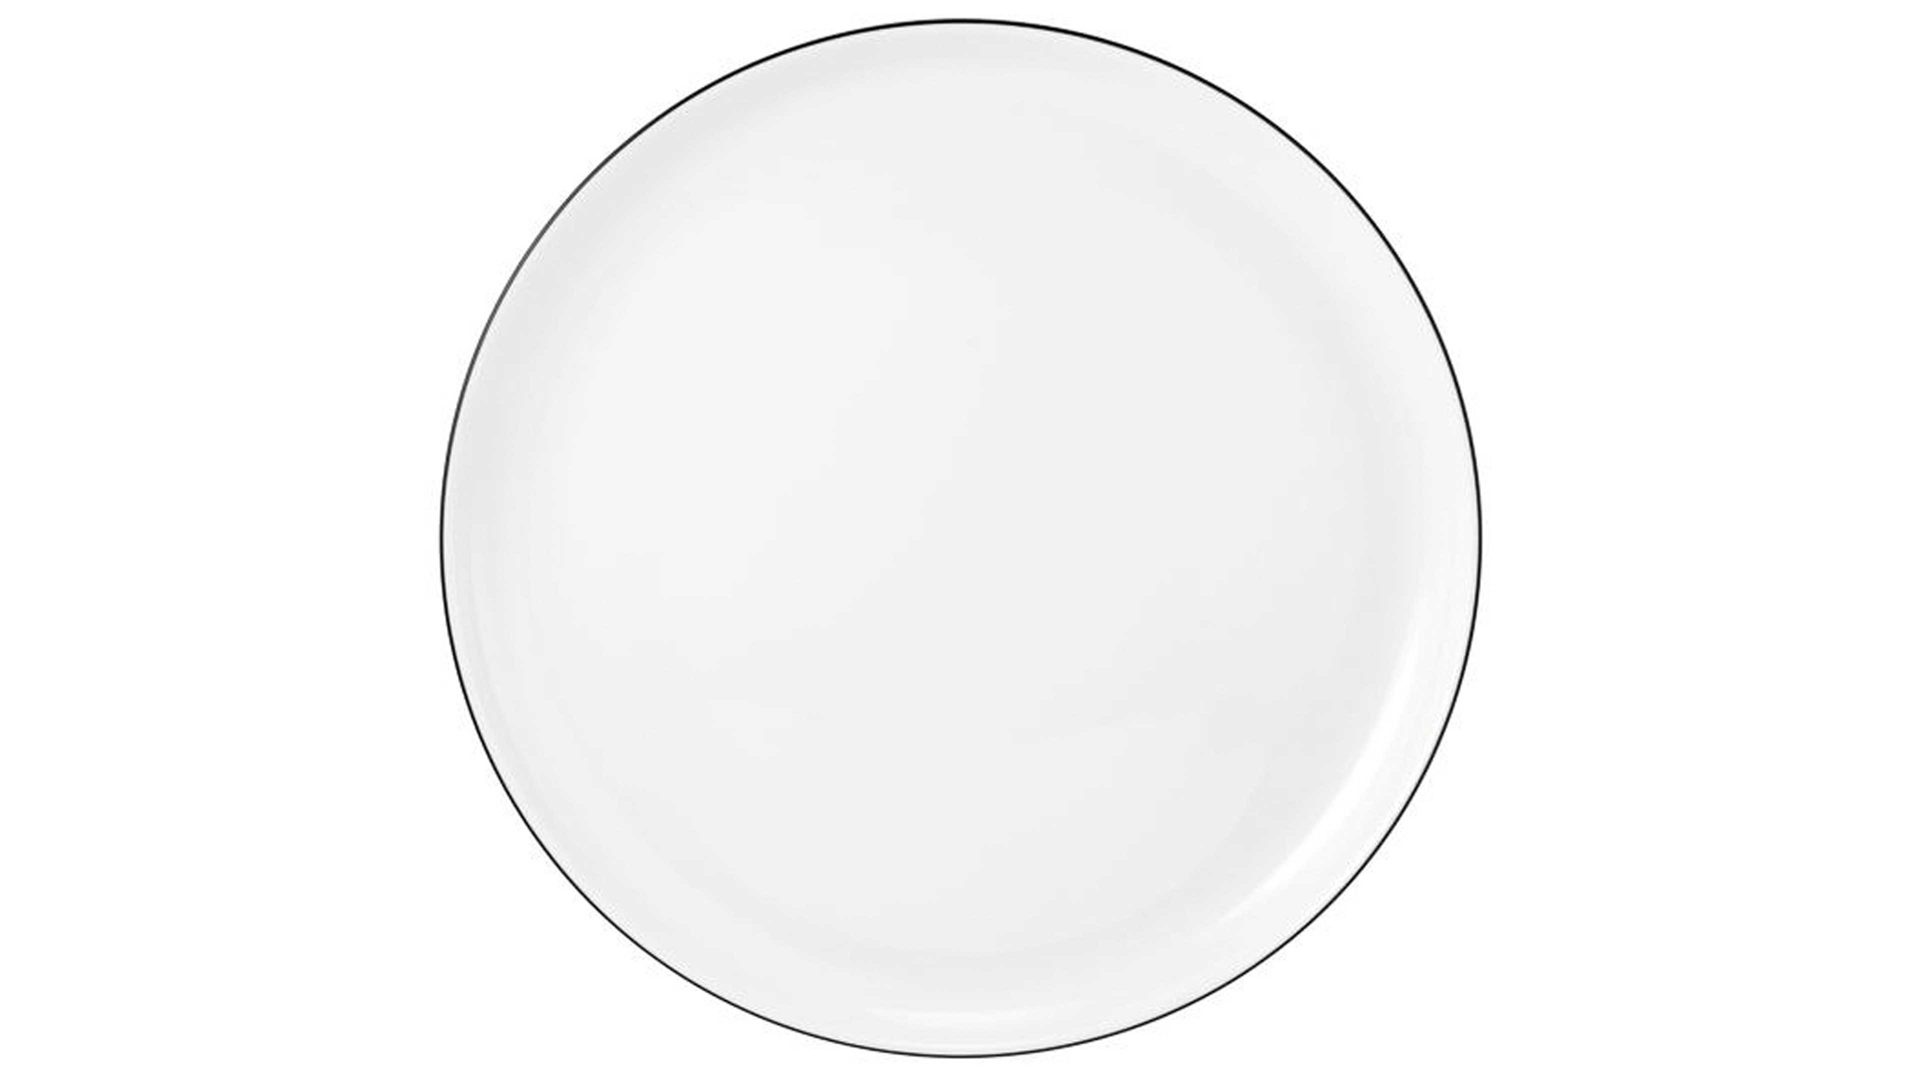 Essteller Seltmann aus Porzellan in Weiß Seltmann Lido – Speiseteller weißes Porzellan – Durchmesser ca. 26 cm